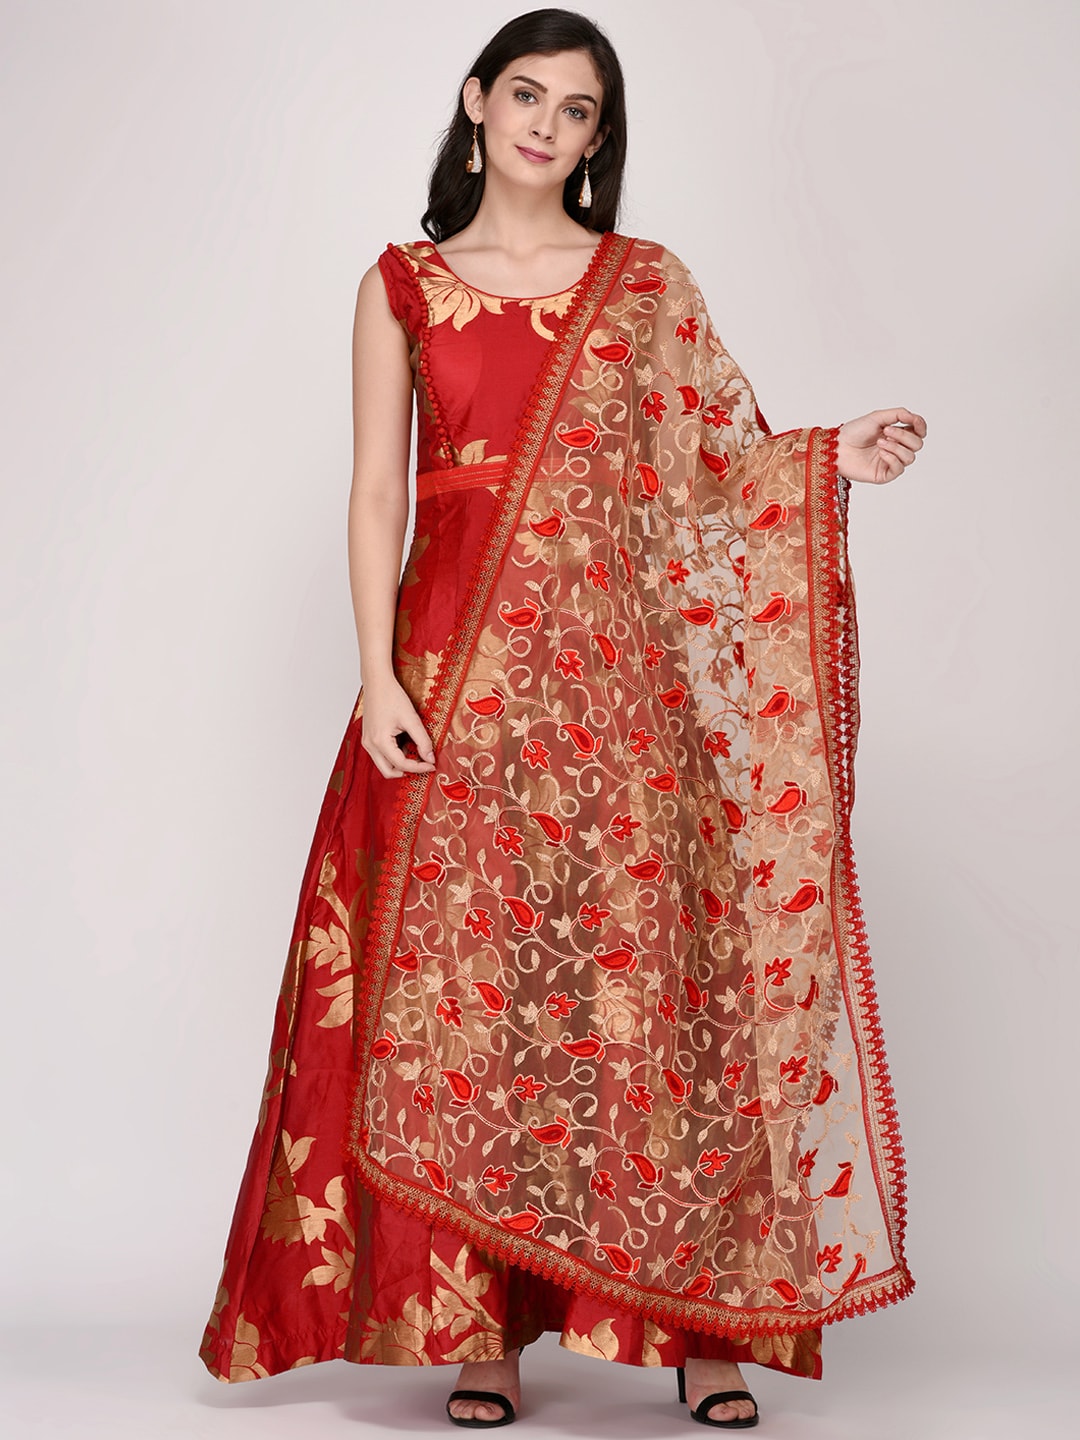 Dupatta Bazaar Red & Beige Embroidered Dupatta Price in India